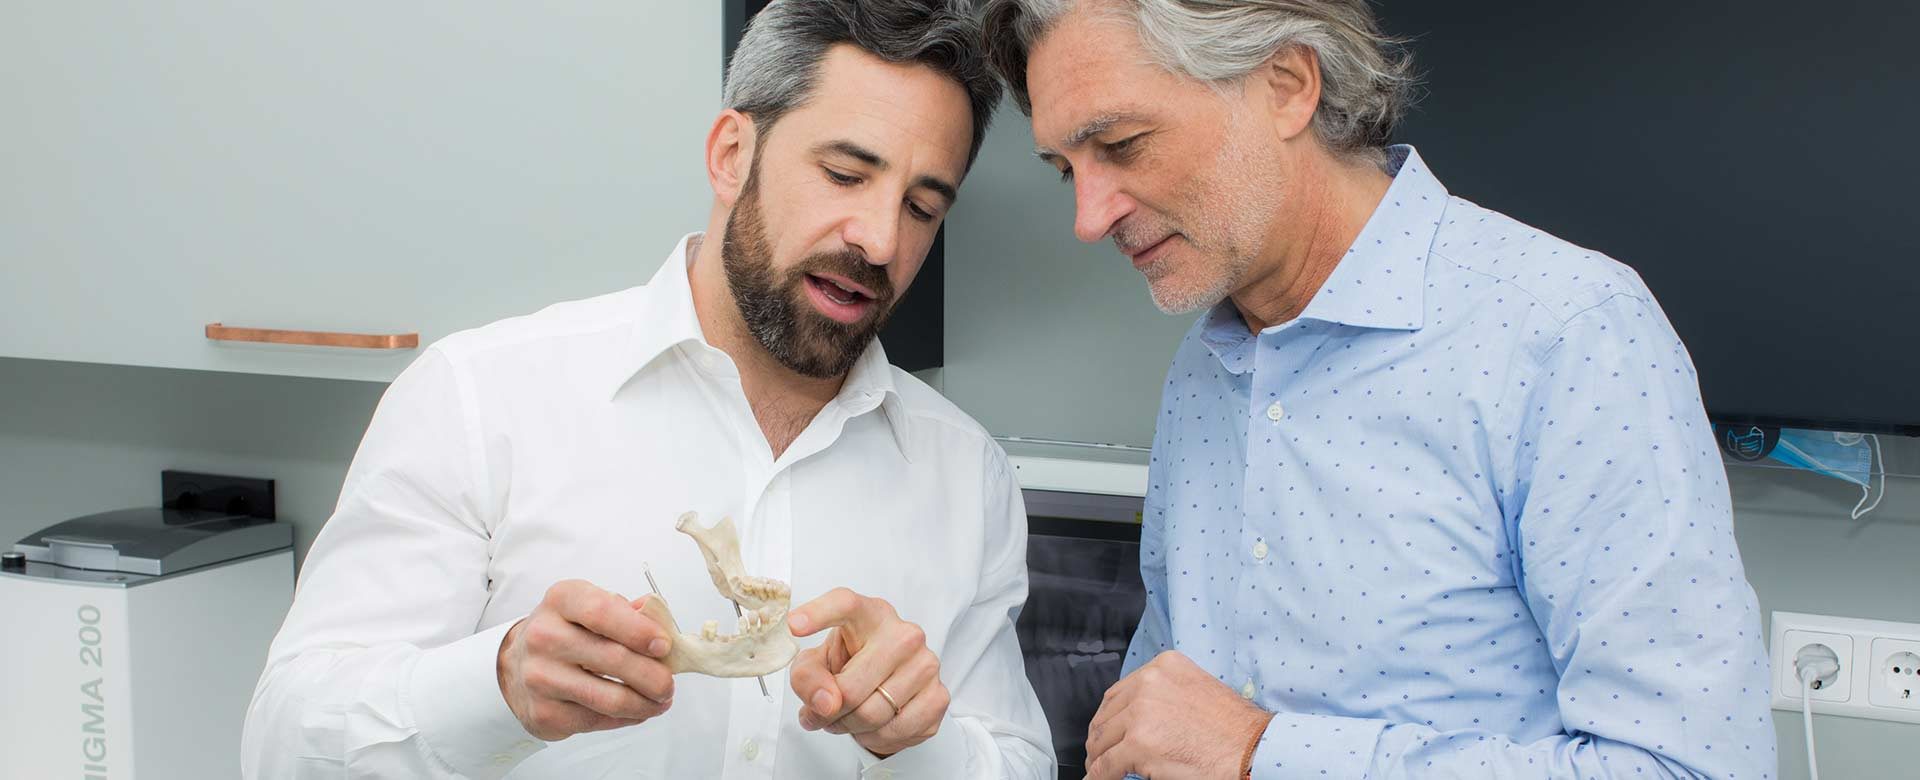 Zahnarzt Dr. Andreas Quidenus erklärt älterem Patienten am Modell eines Unterkiefers den Knochenaufbau